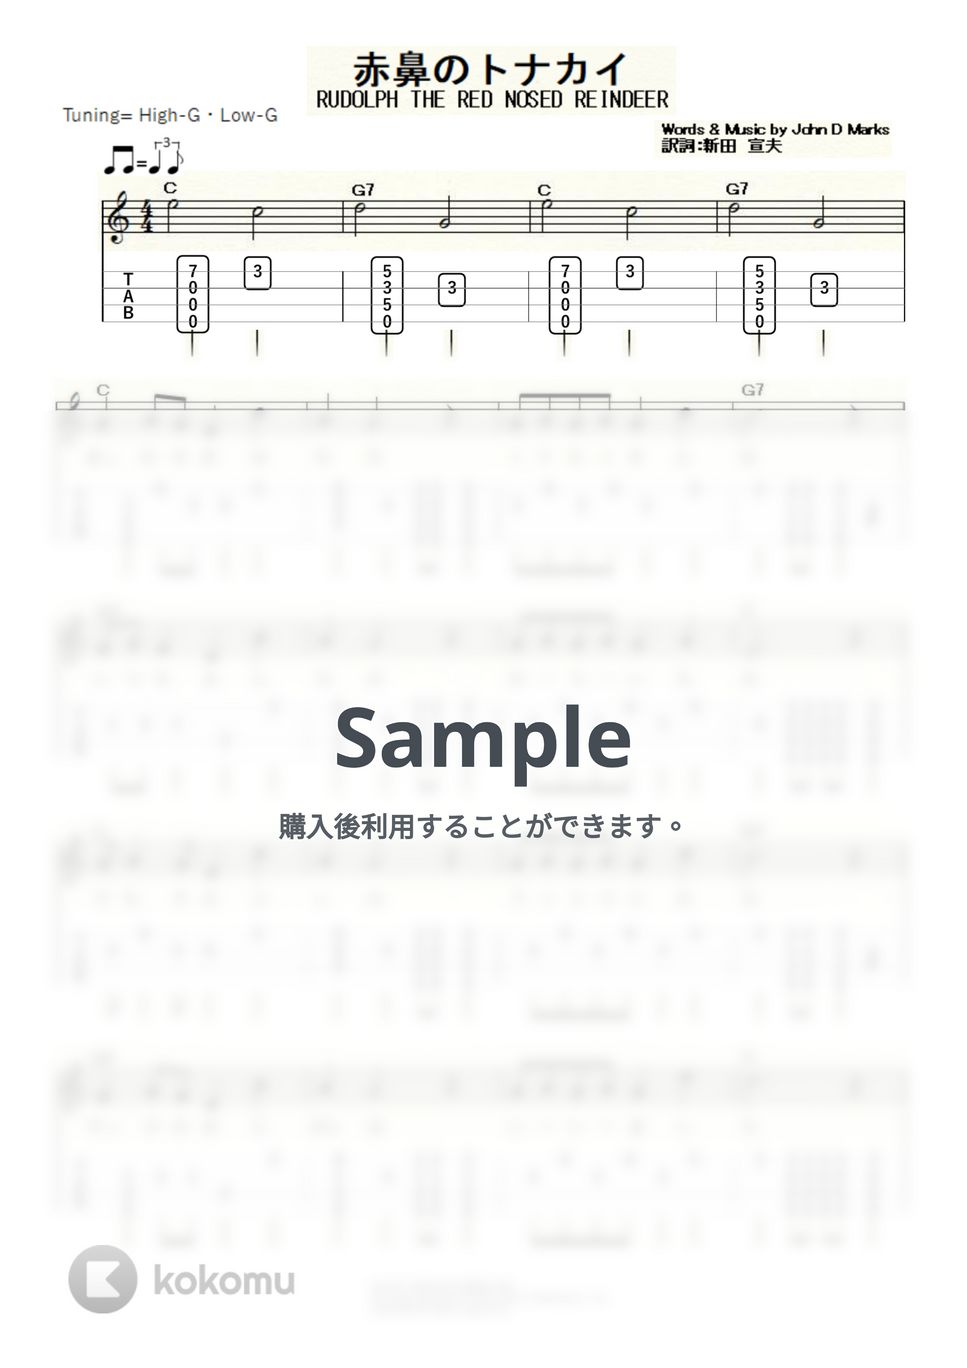 ジョニー・マークス - 赤鼻のトナカイ (ｳｸﾚﾚｿﾛ / High-G,Low-G / 初級) by ukulelepapa